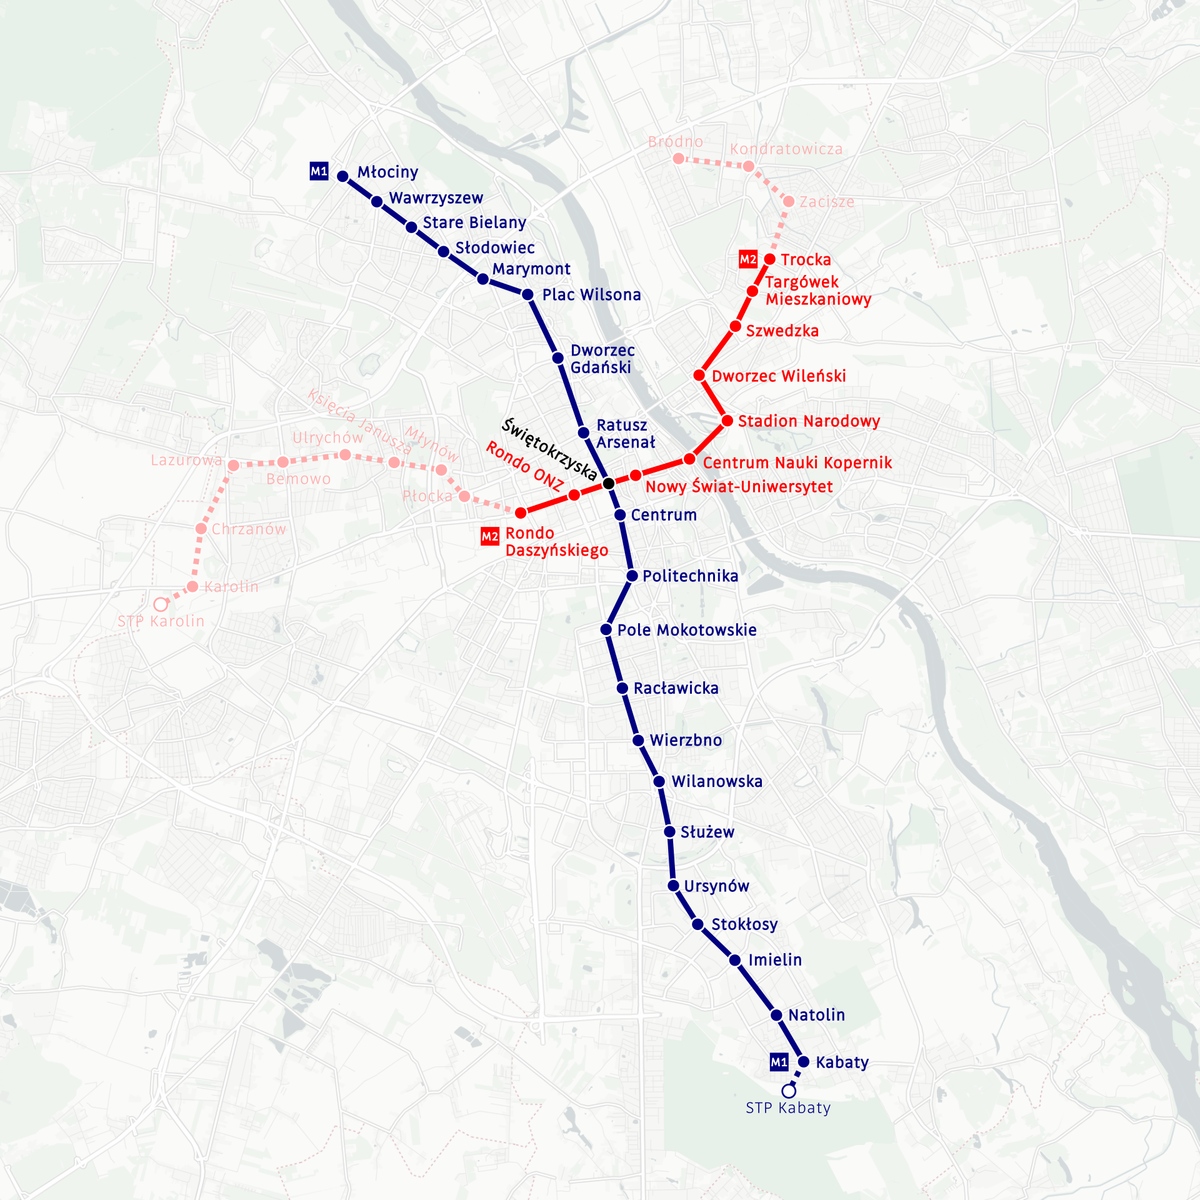 Метро варшавы: схема, карта варшавского метрополитена на русском языке